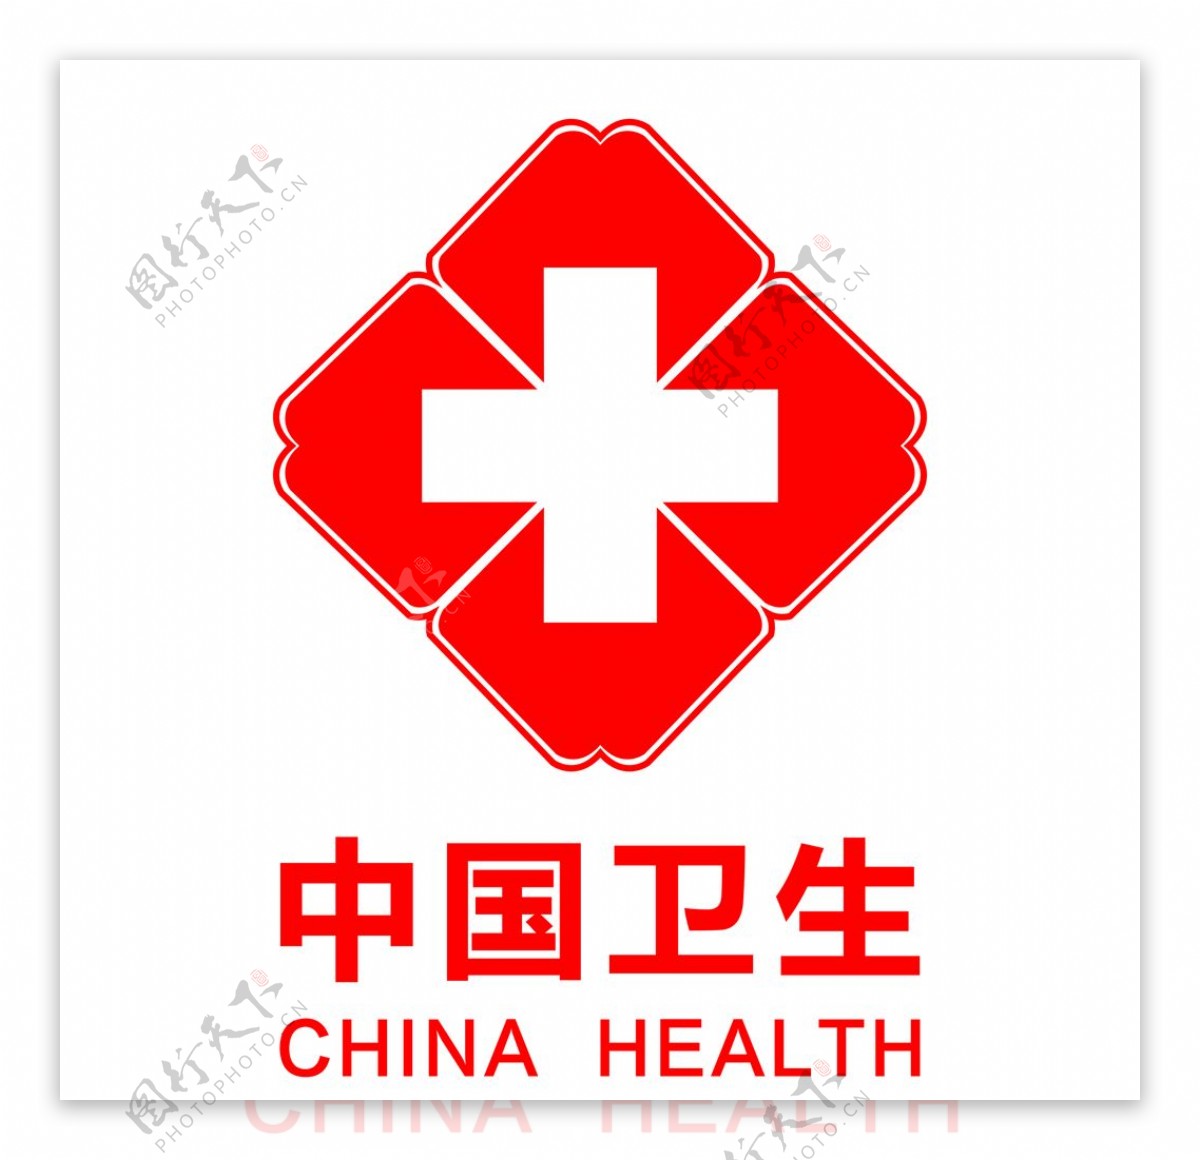 中国卫生chinahealth